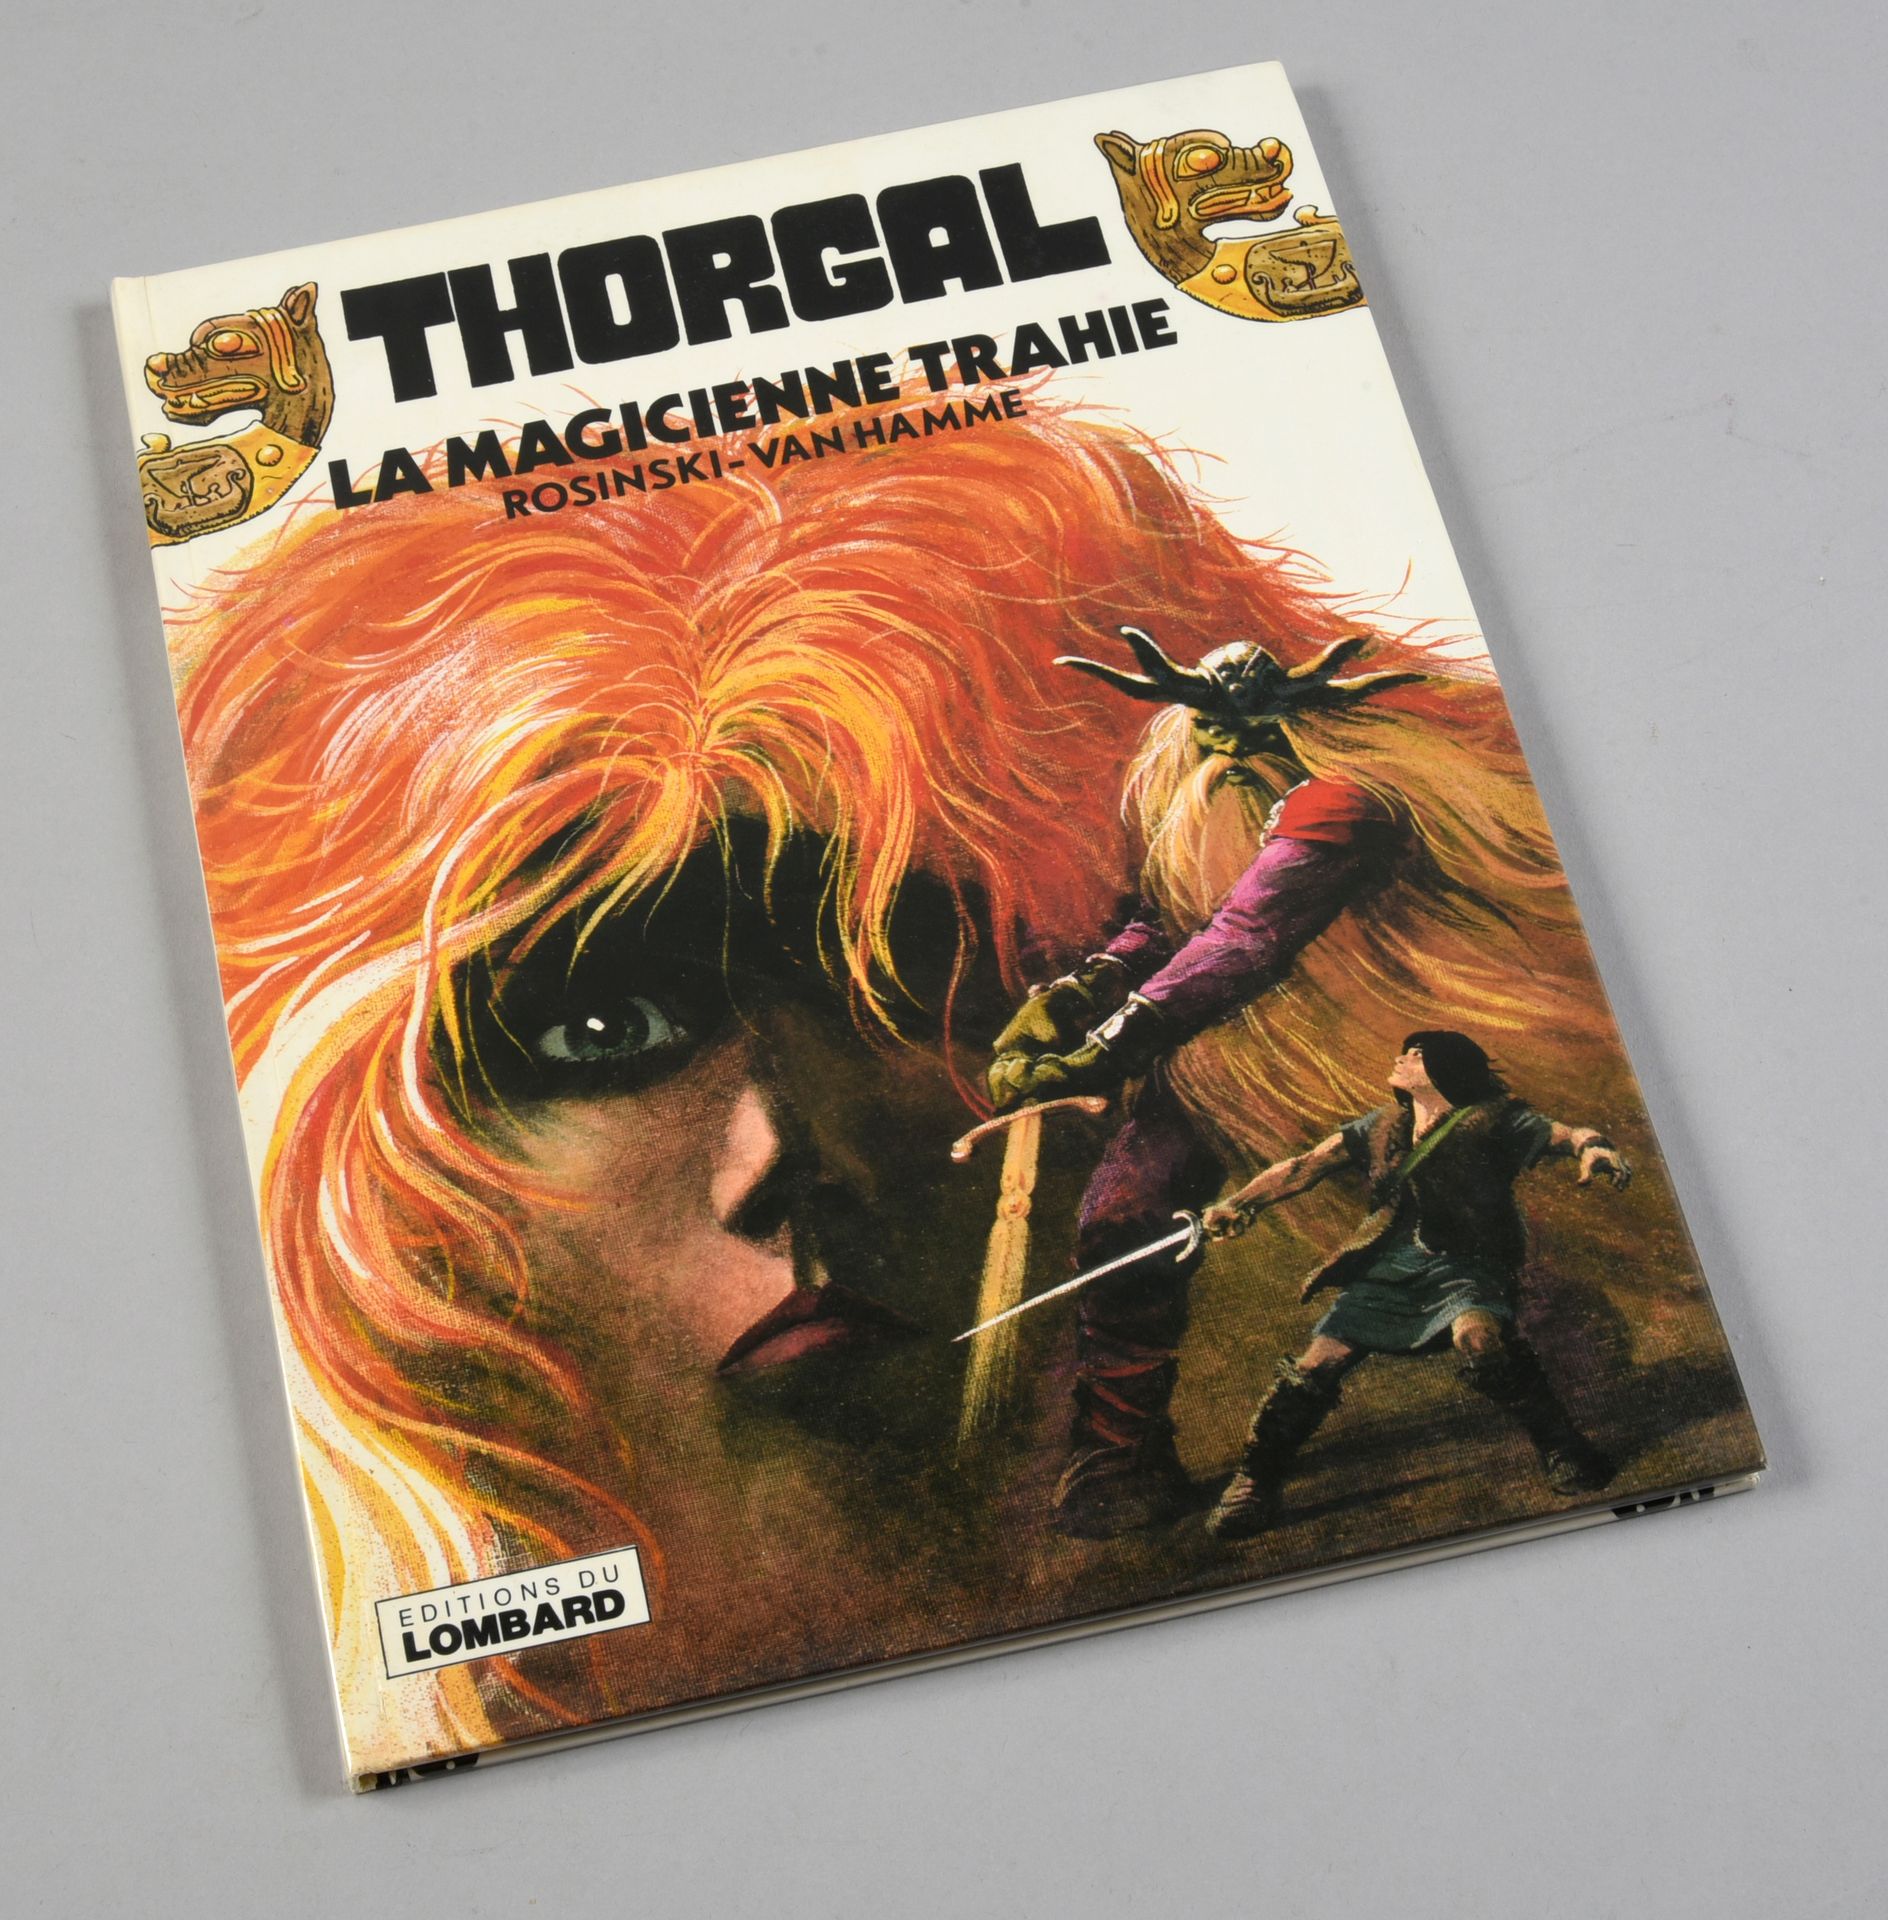 ROSINSKI THORGAL 01. LA MAGICIENNE TRAHIE. Erste Ausgabe Lombard mit einer herrl&hellip;